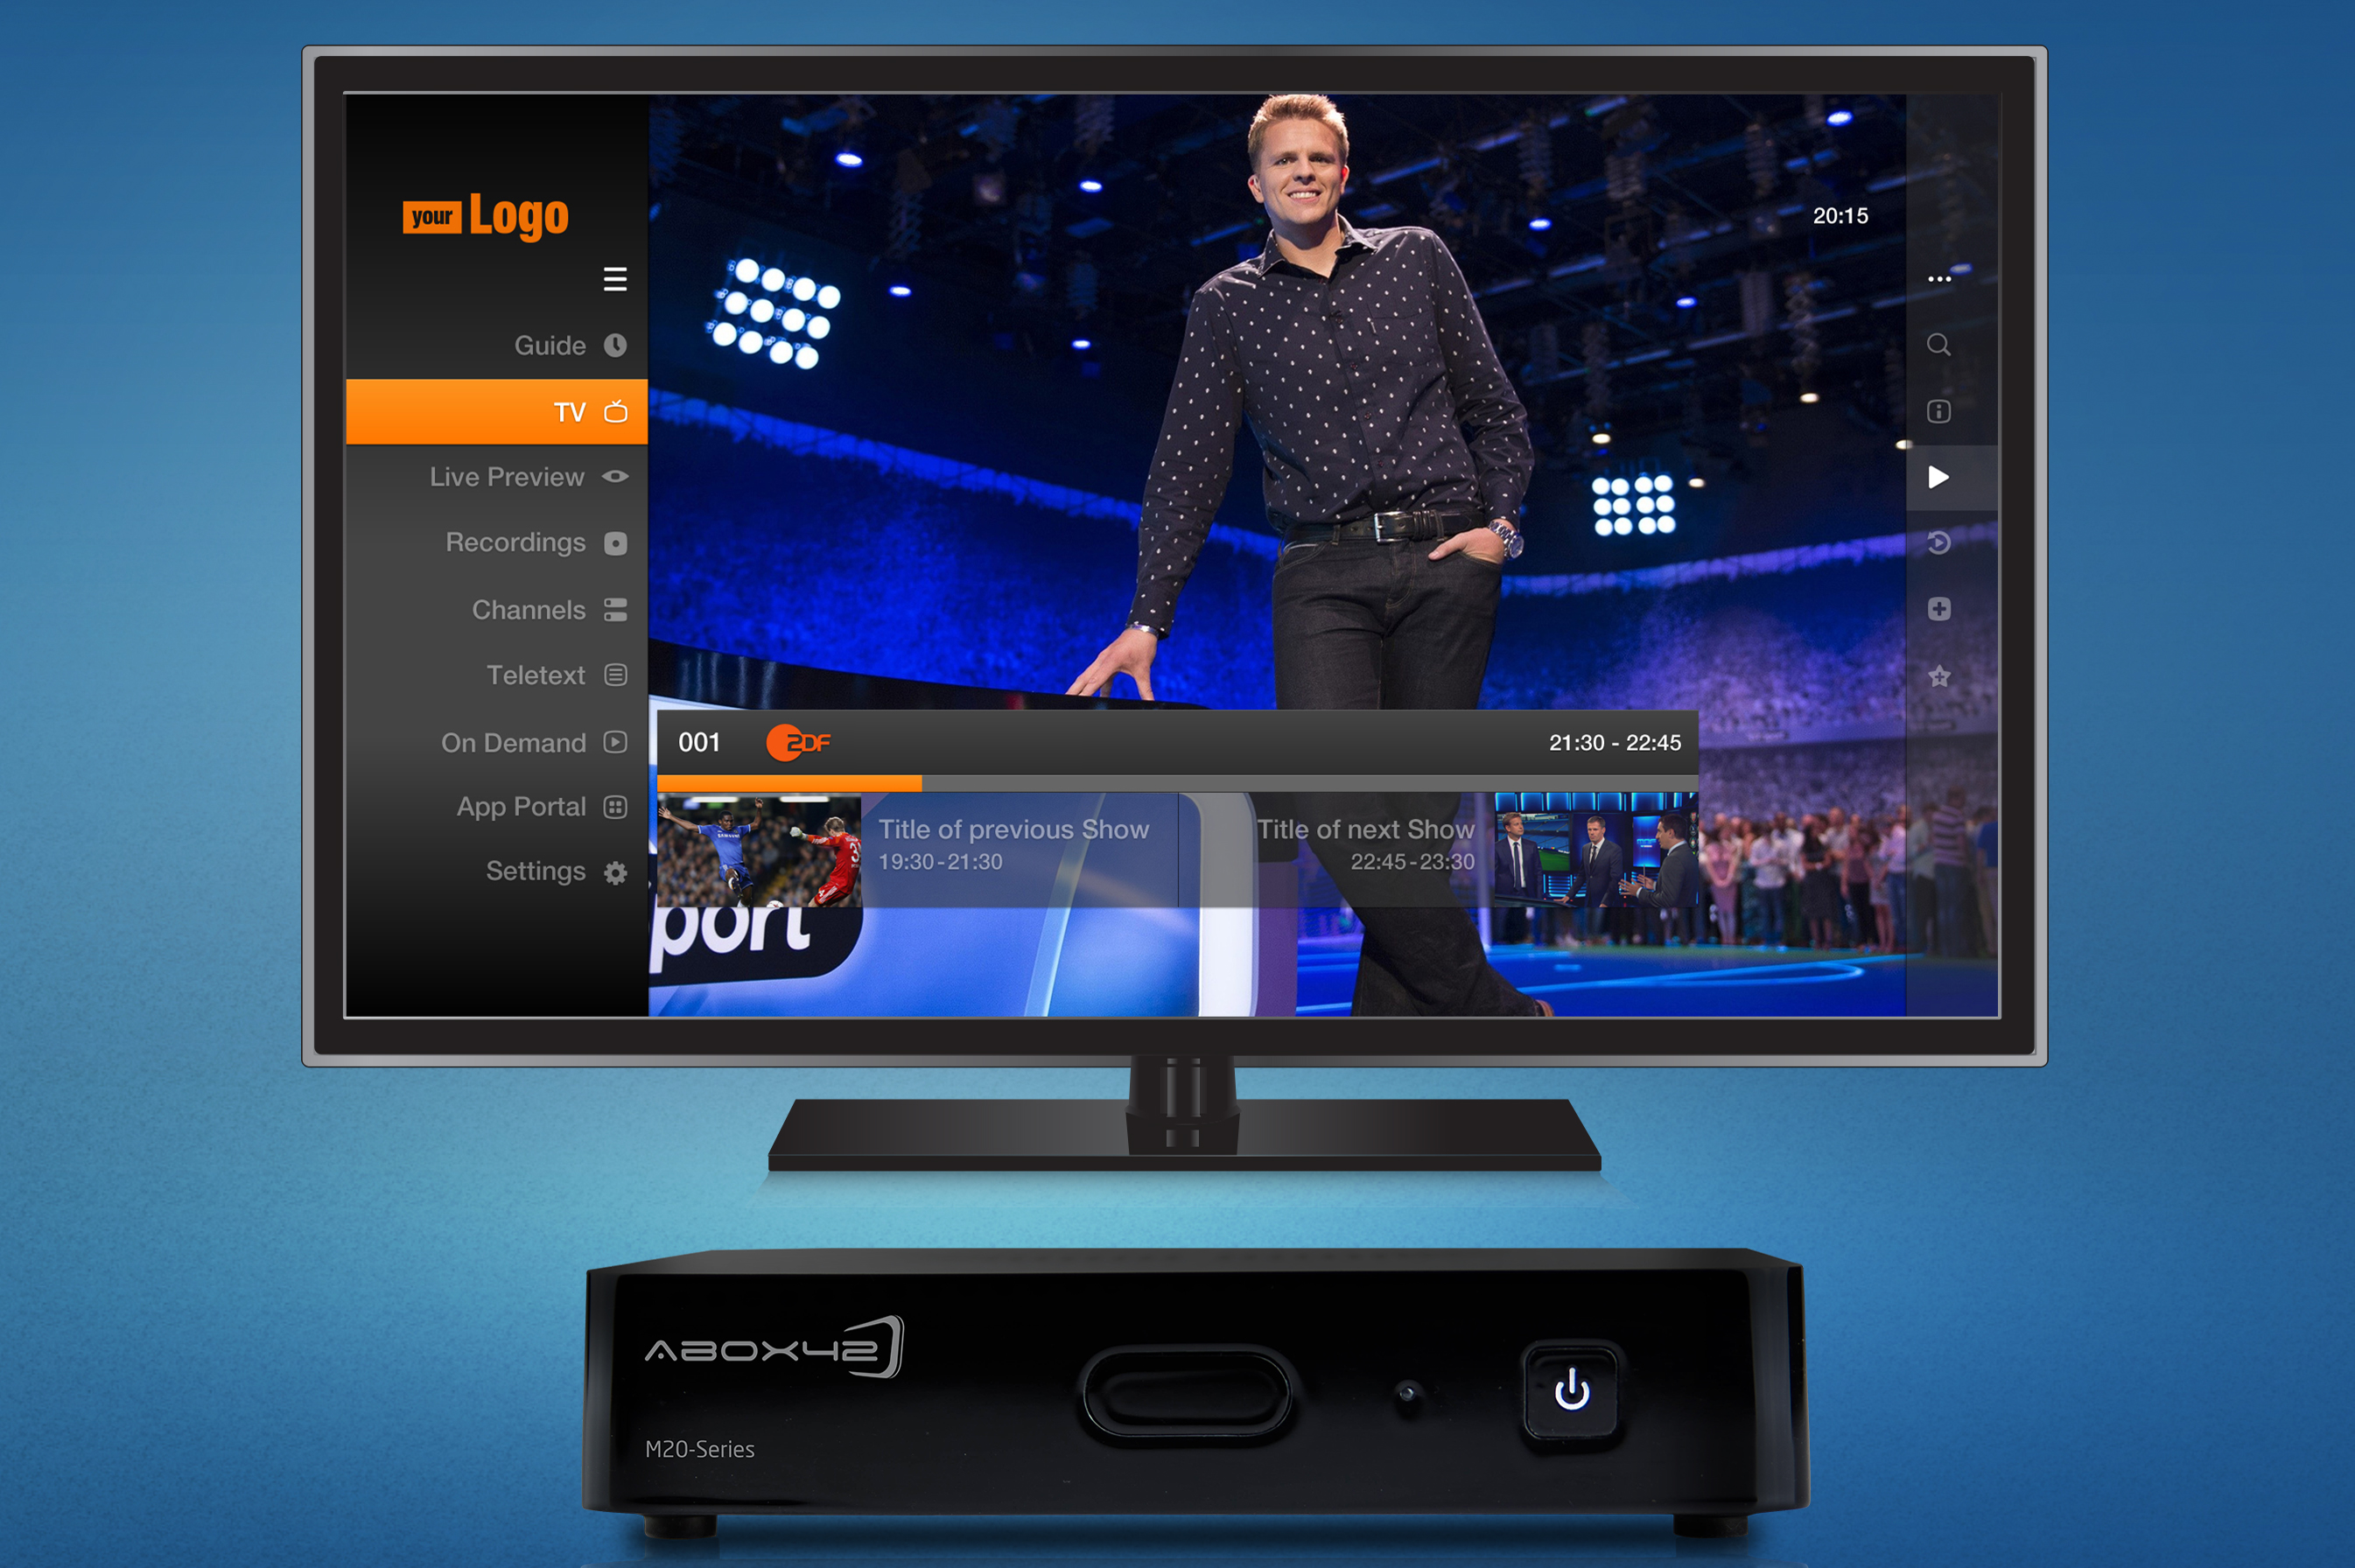 Kortfattet coping Uafhængighed ABOX42 provides smart IPTV set-top box platform for German cable operators